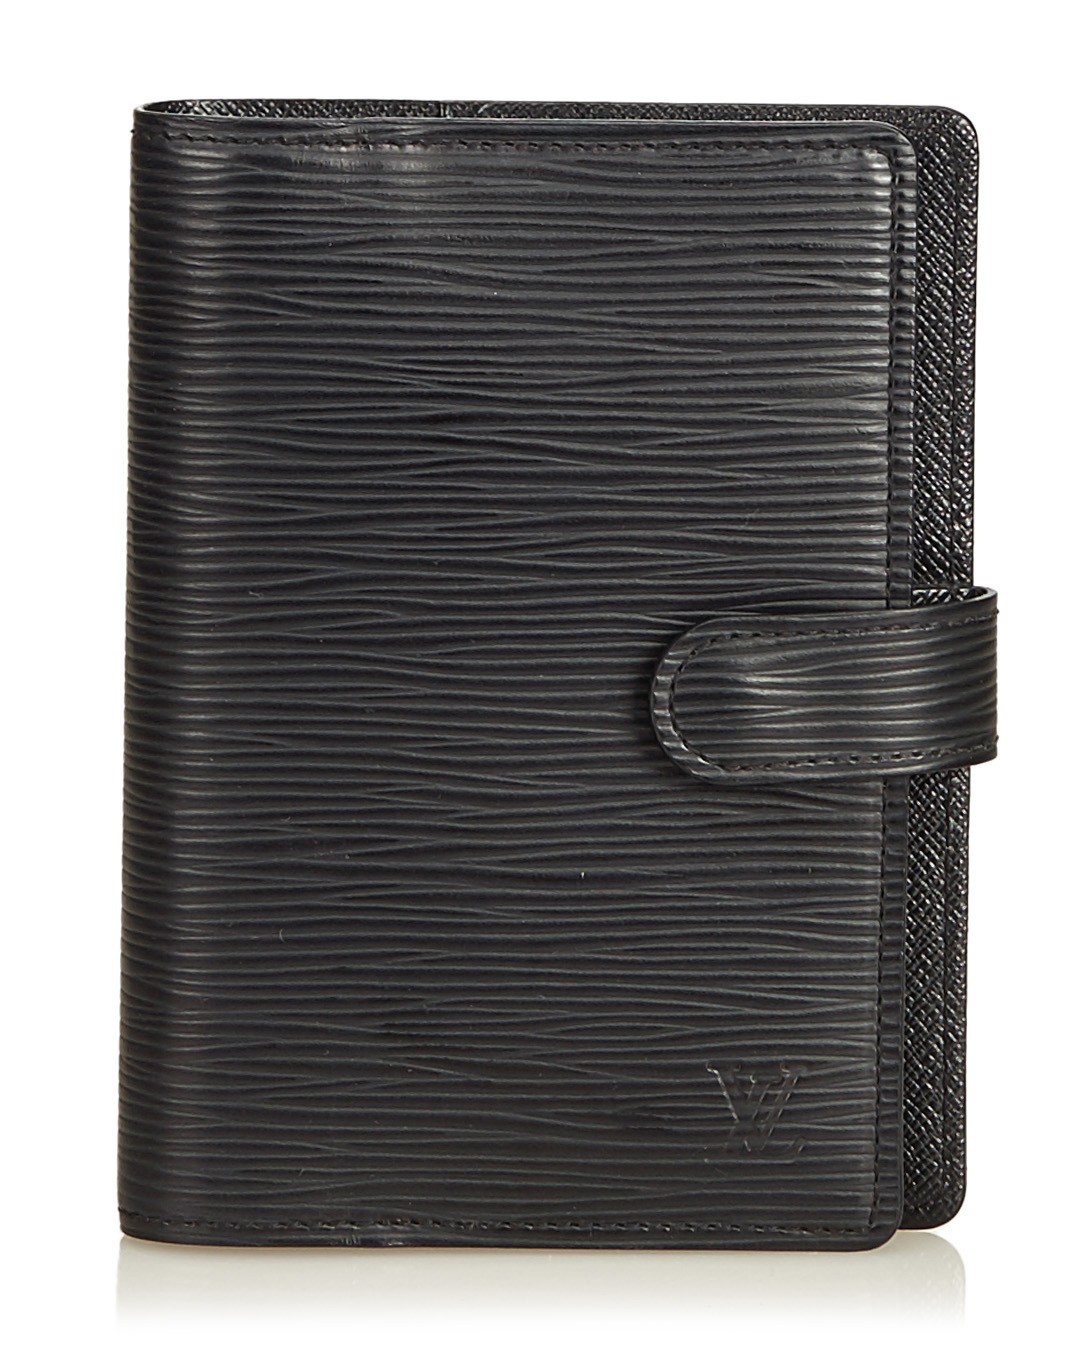 Louis Vuitton, Accessories, 200 Authentic Louis Vuitton Agenda Notebook  Pm Size